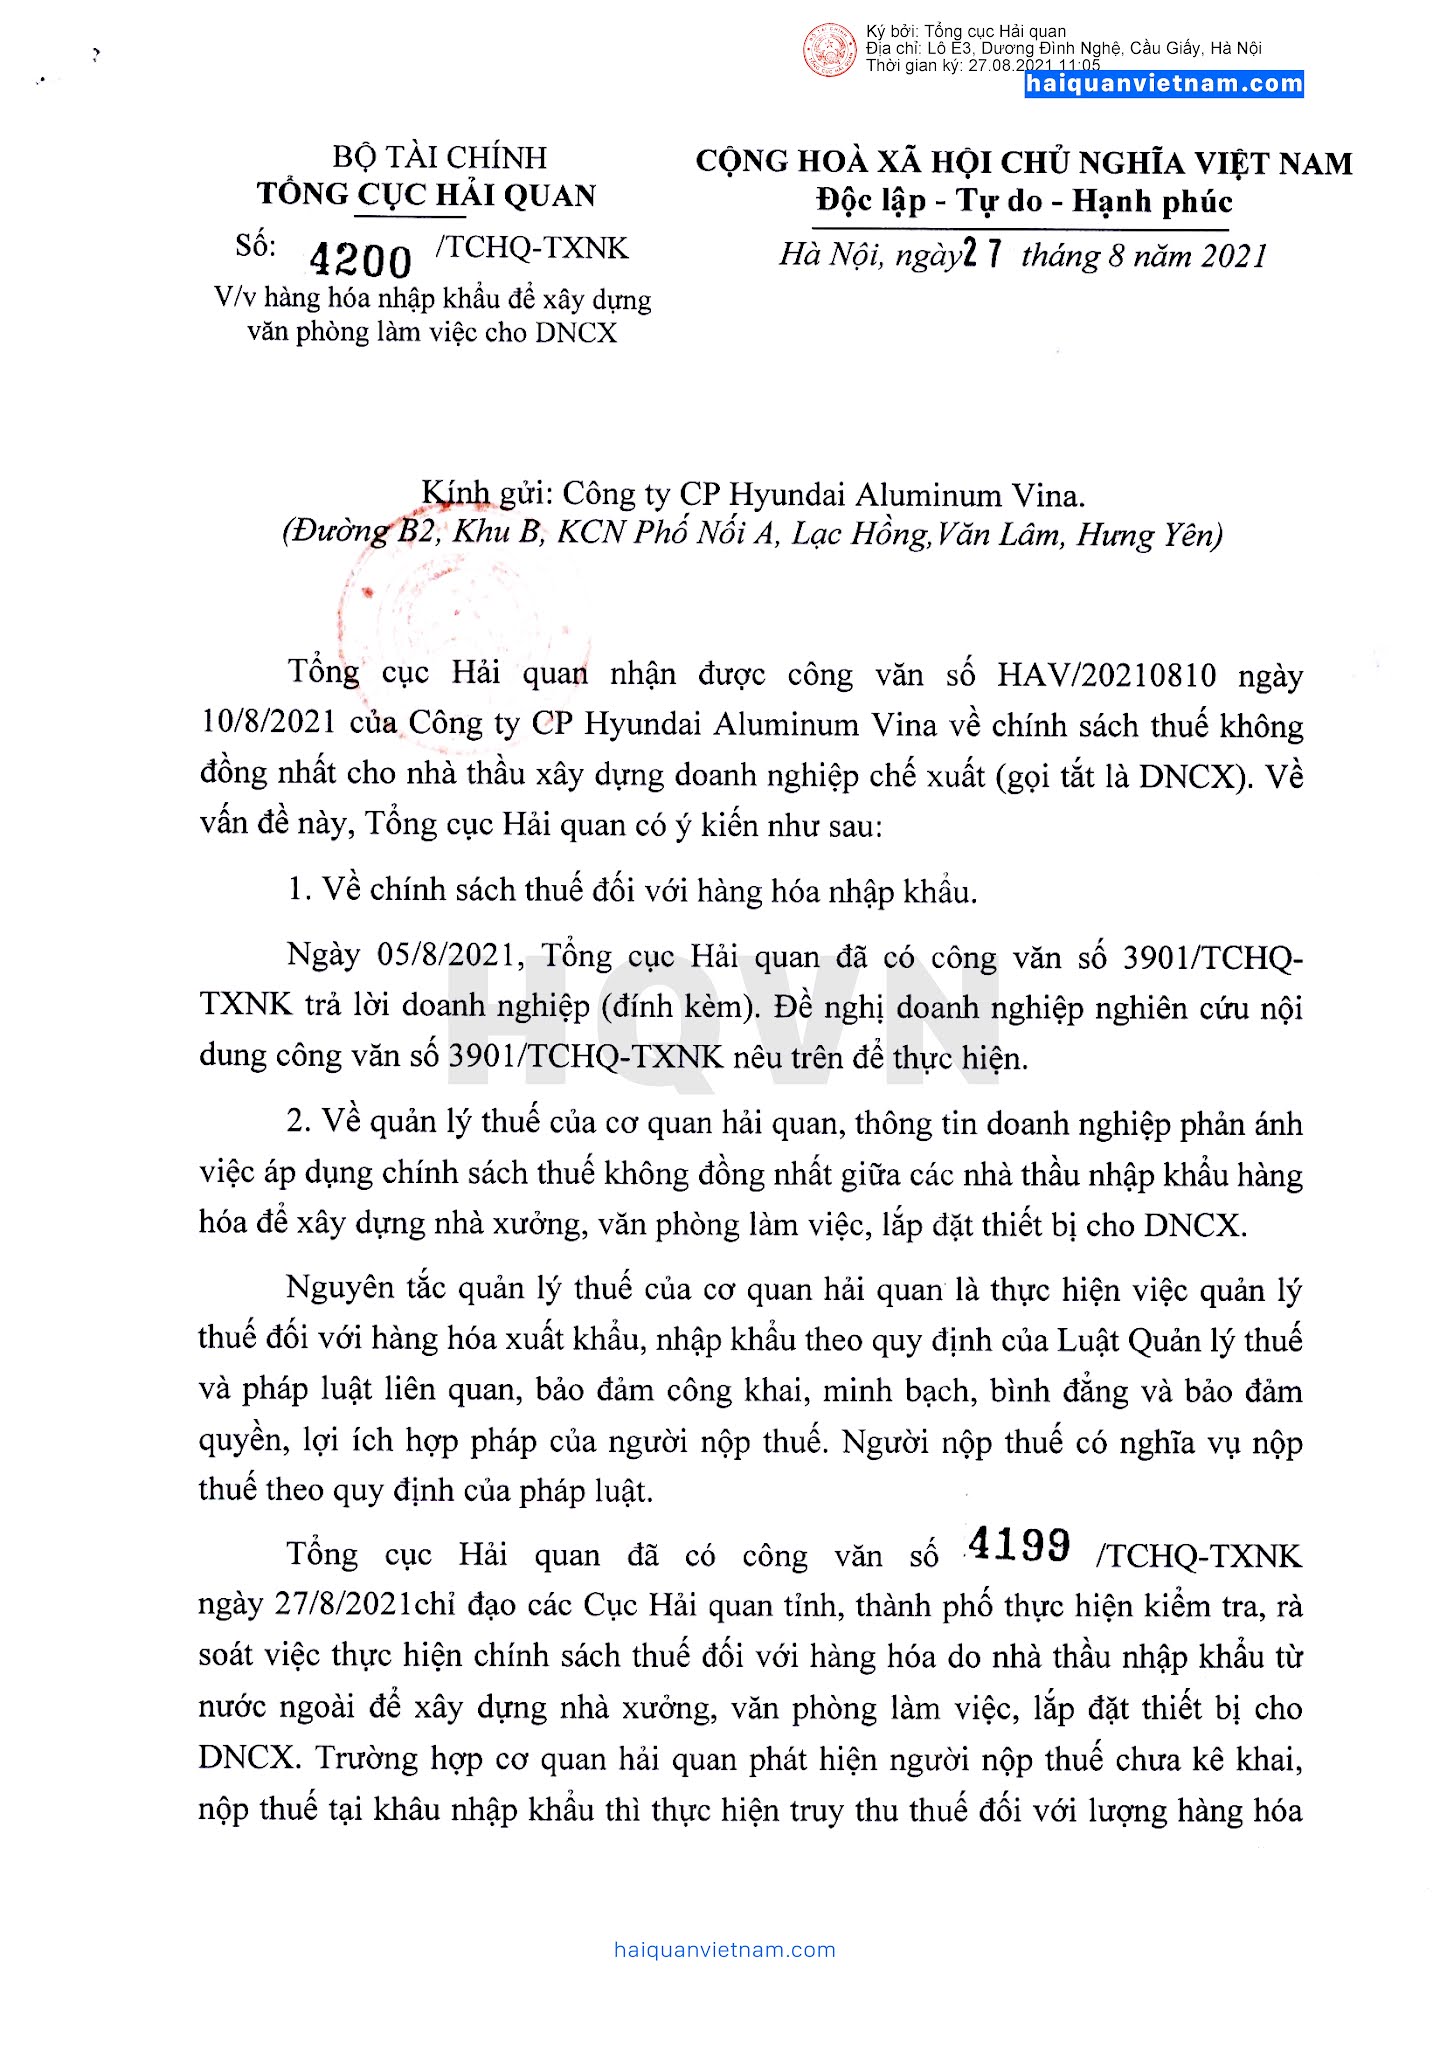 4200/TCHQ-TXNK ngày 27/08/2021: Hàng hóa nhập khẩu để xây dựng văn ...